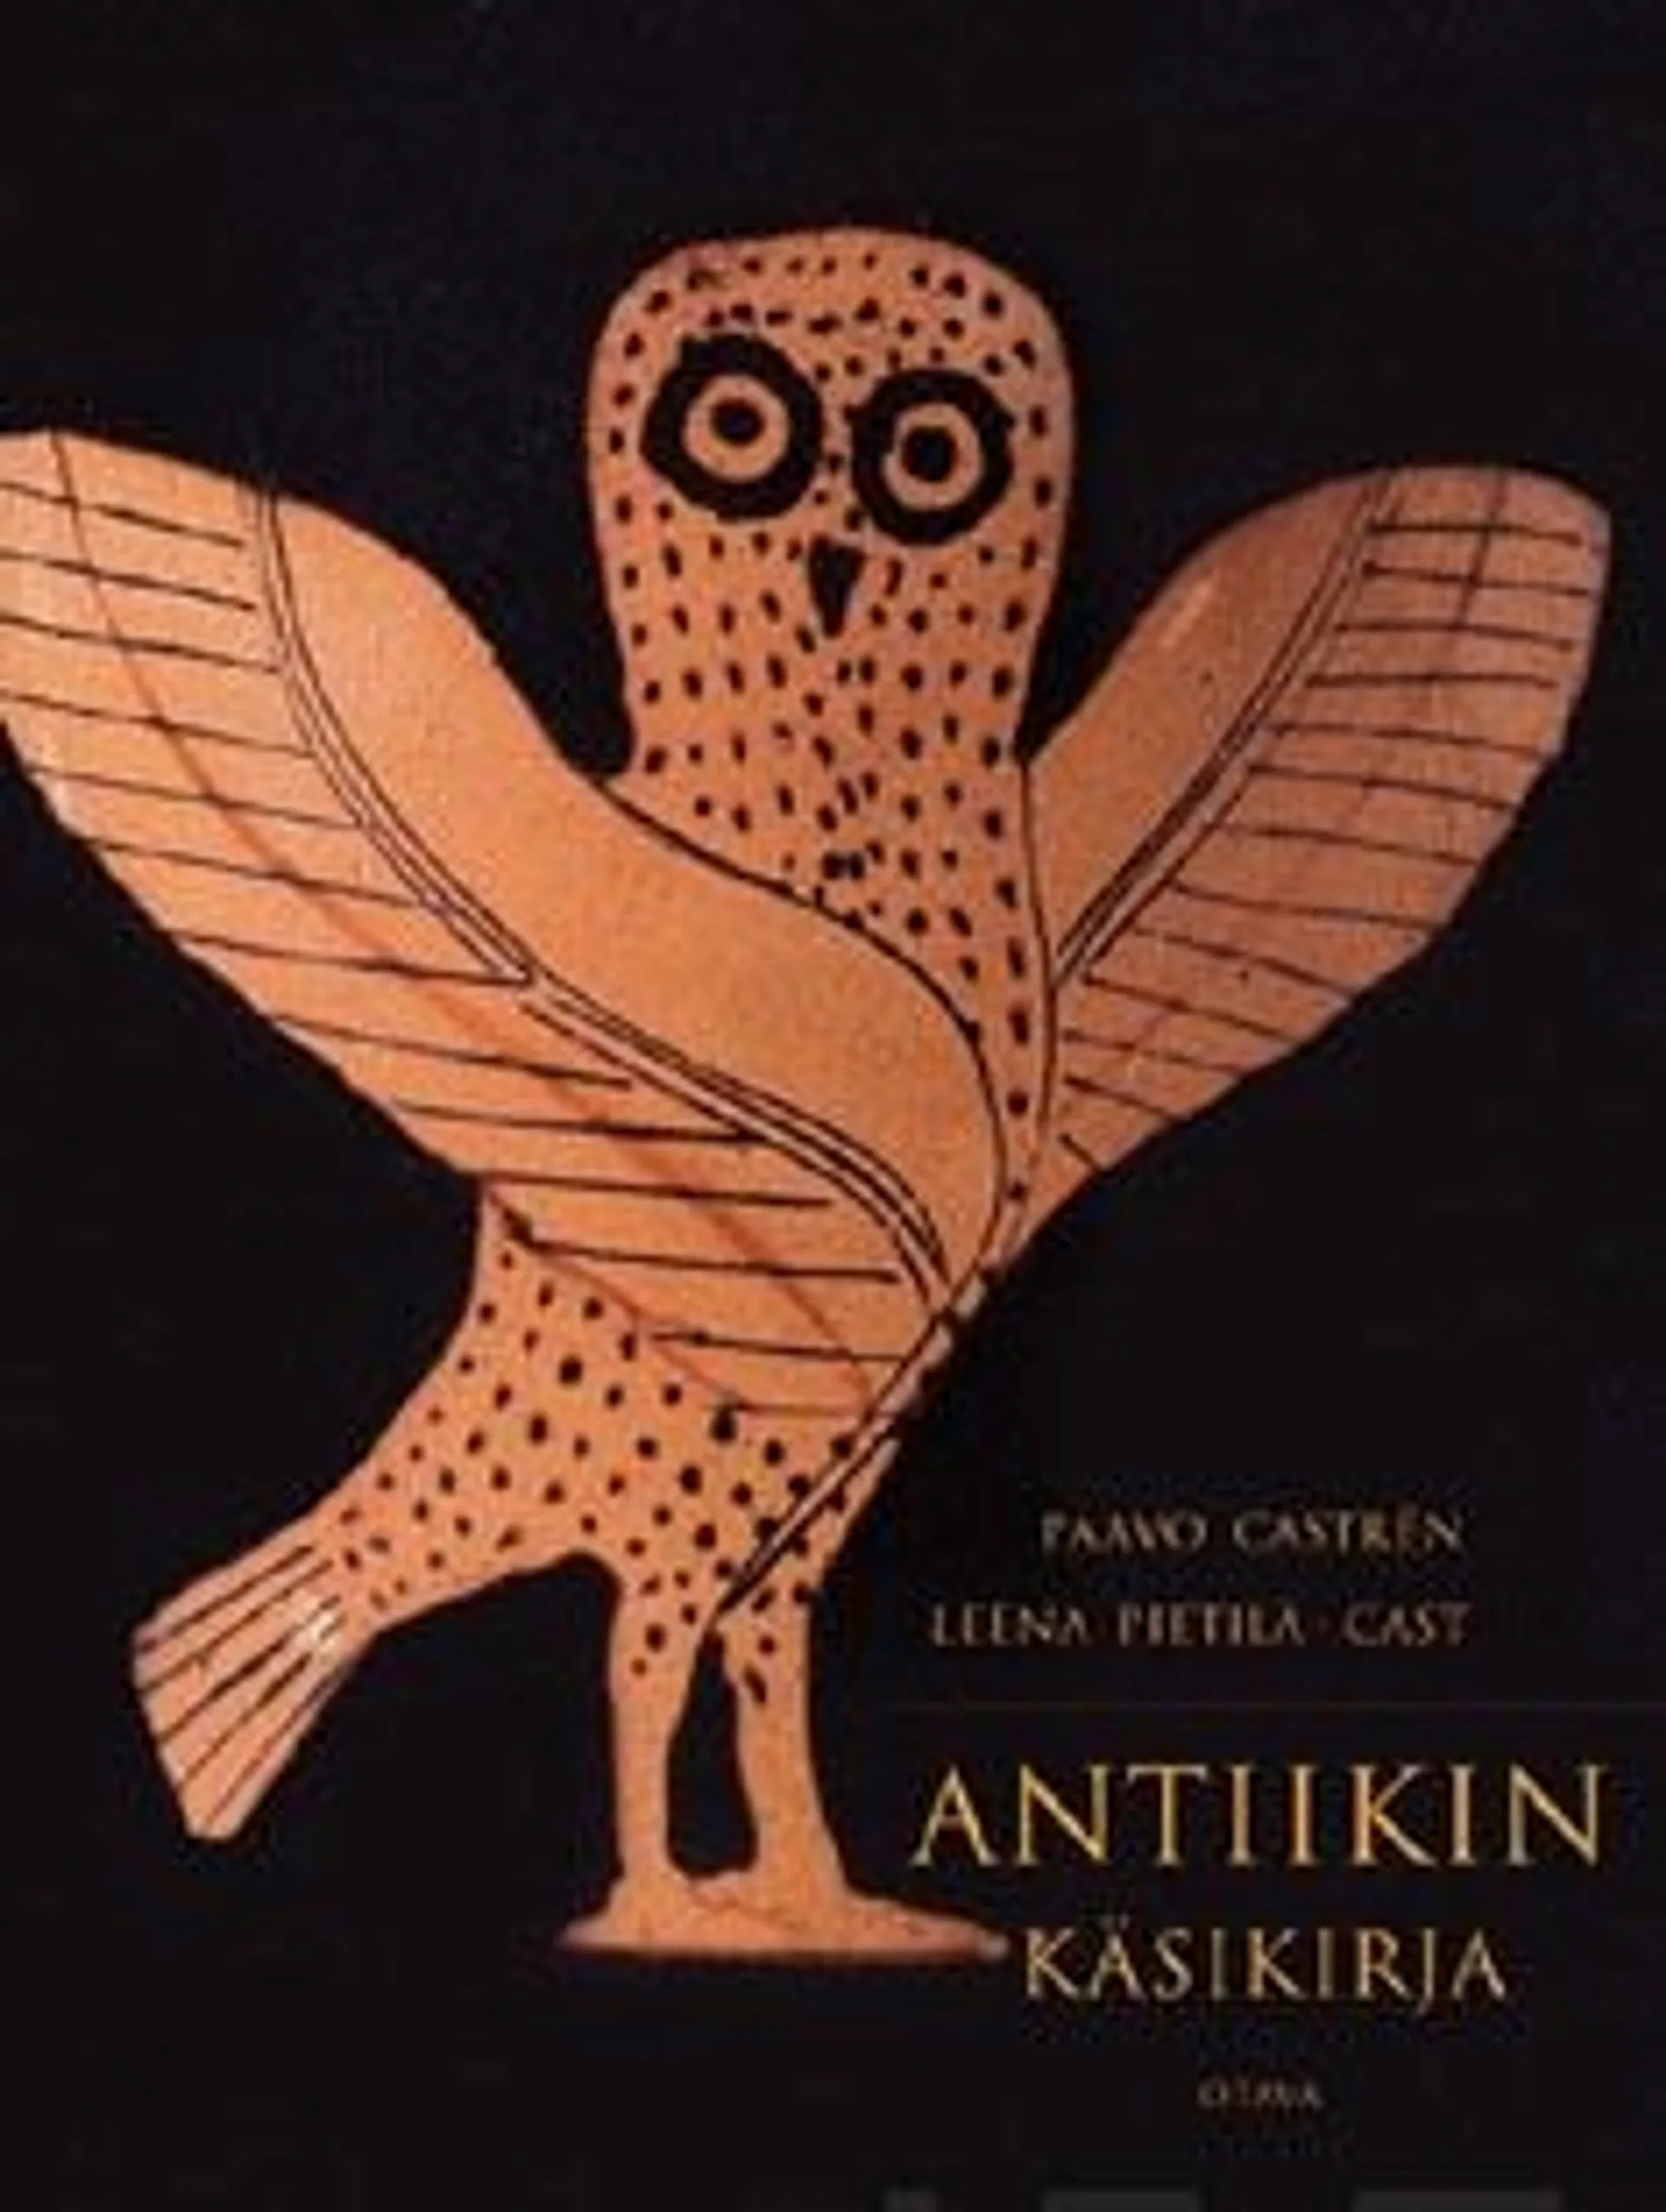 Castrén, Antiikin käsikirja